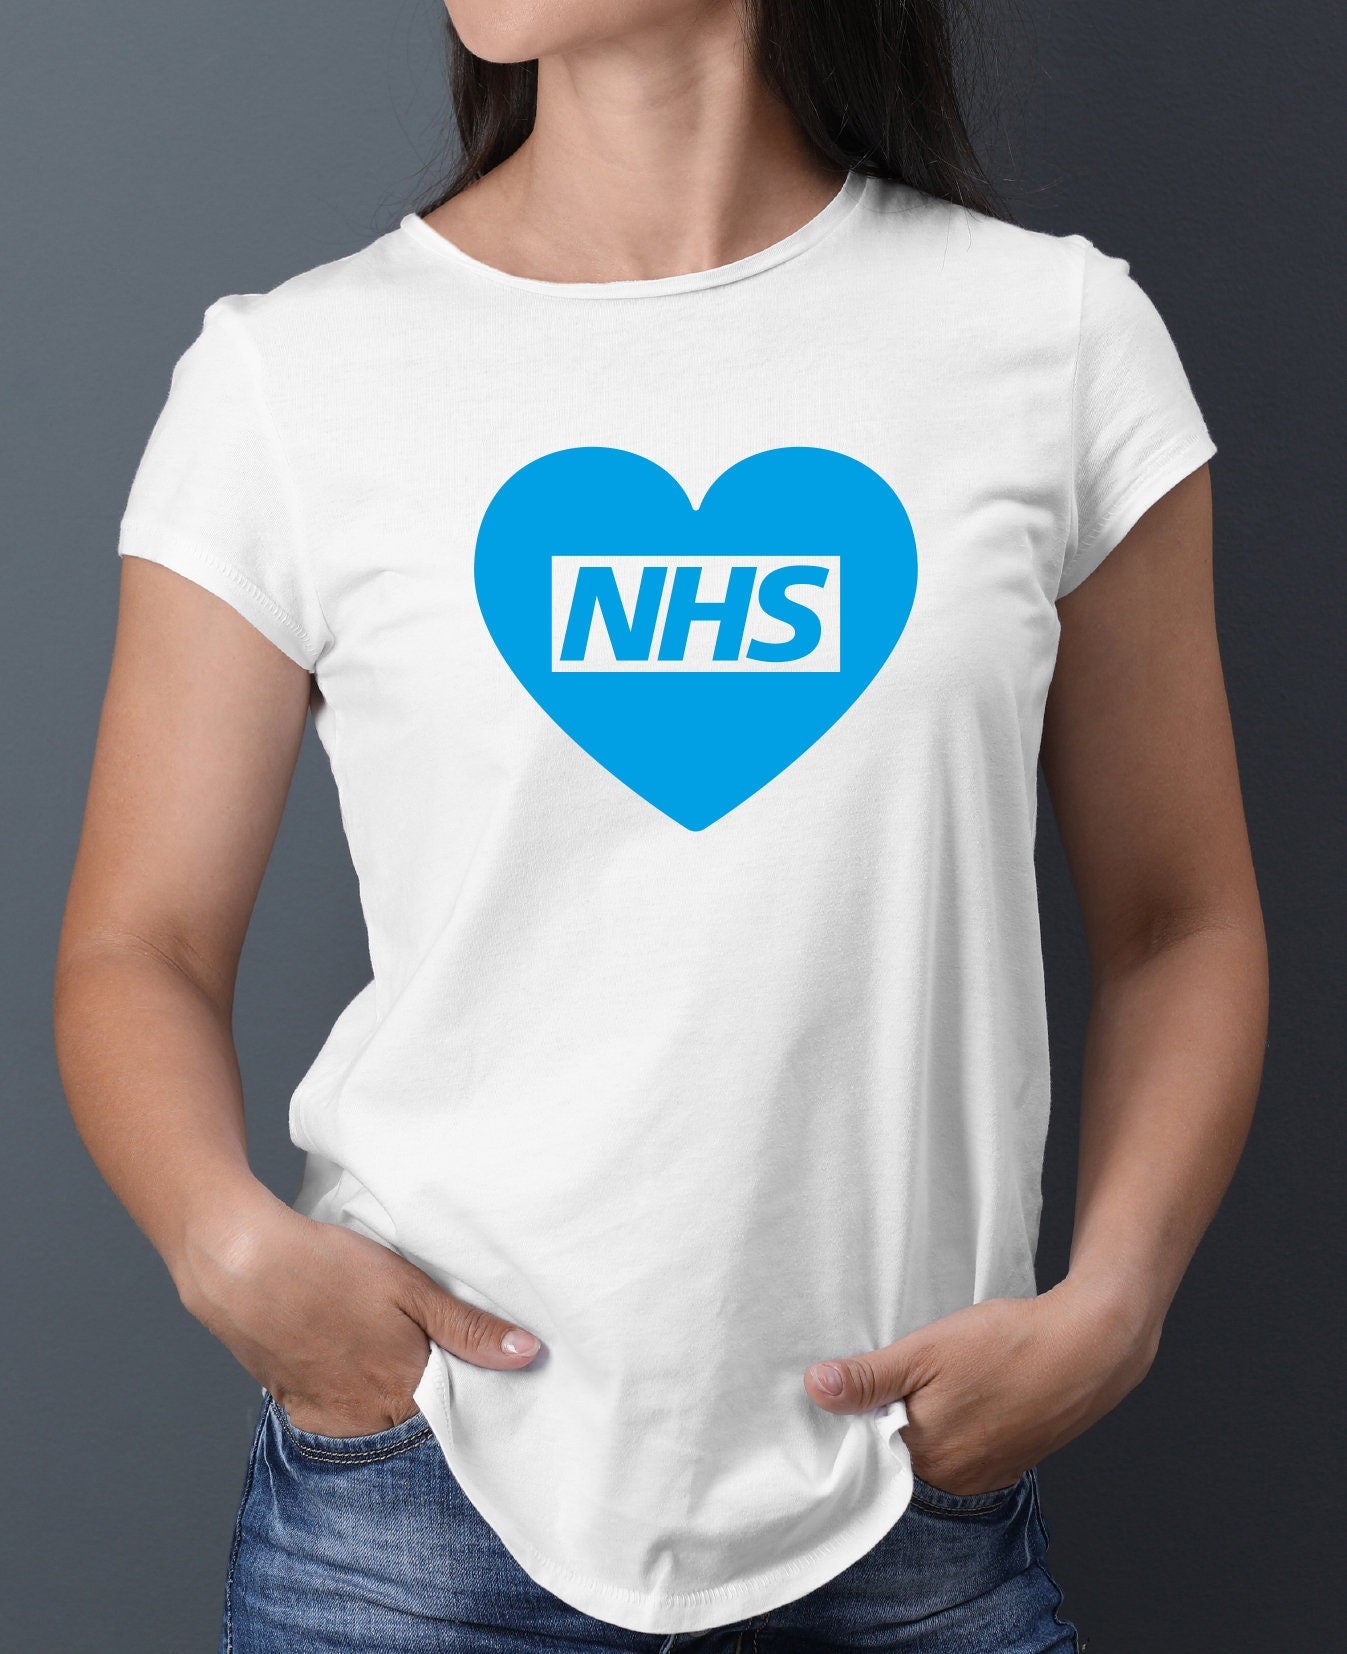 Blue NHS Heart T-Shirt - Heroes Doctors Nurses Care Workers